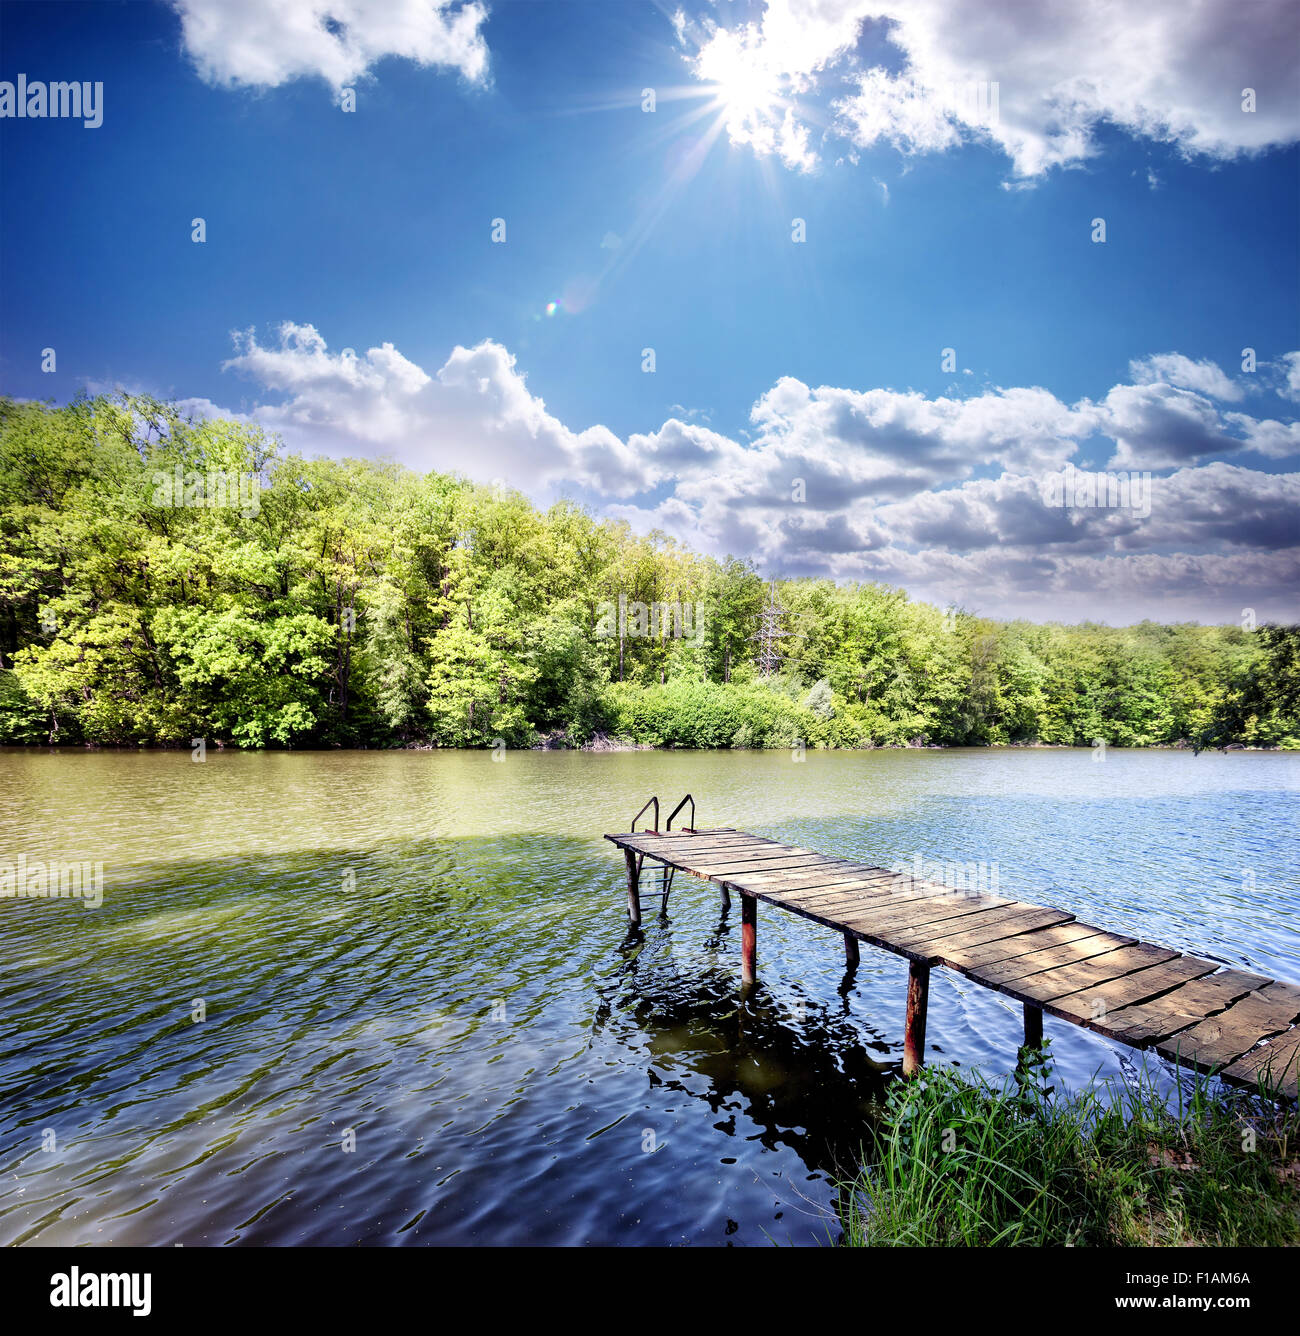 Il molo di legno in un piccolo lago blu sotto il cielo sereno Foto Stock